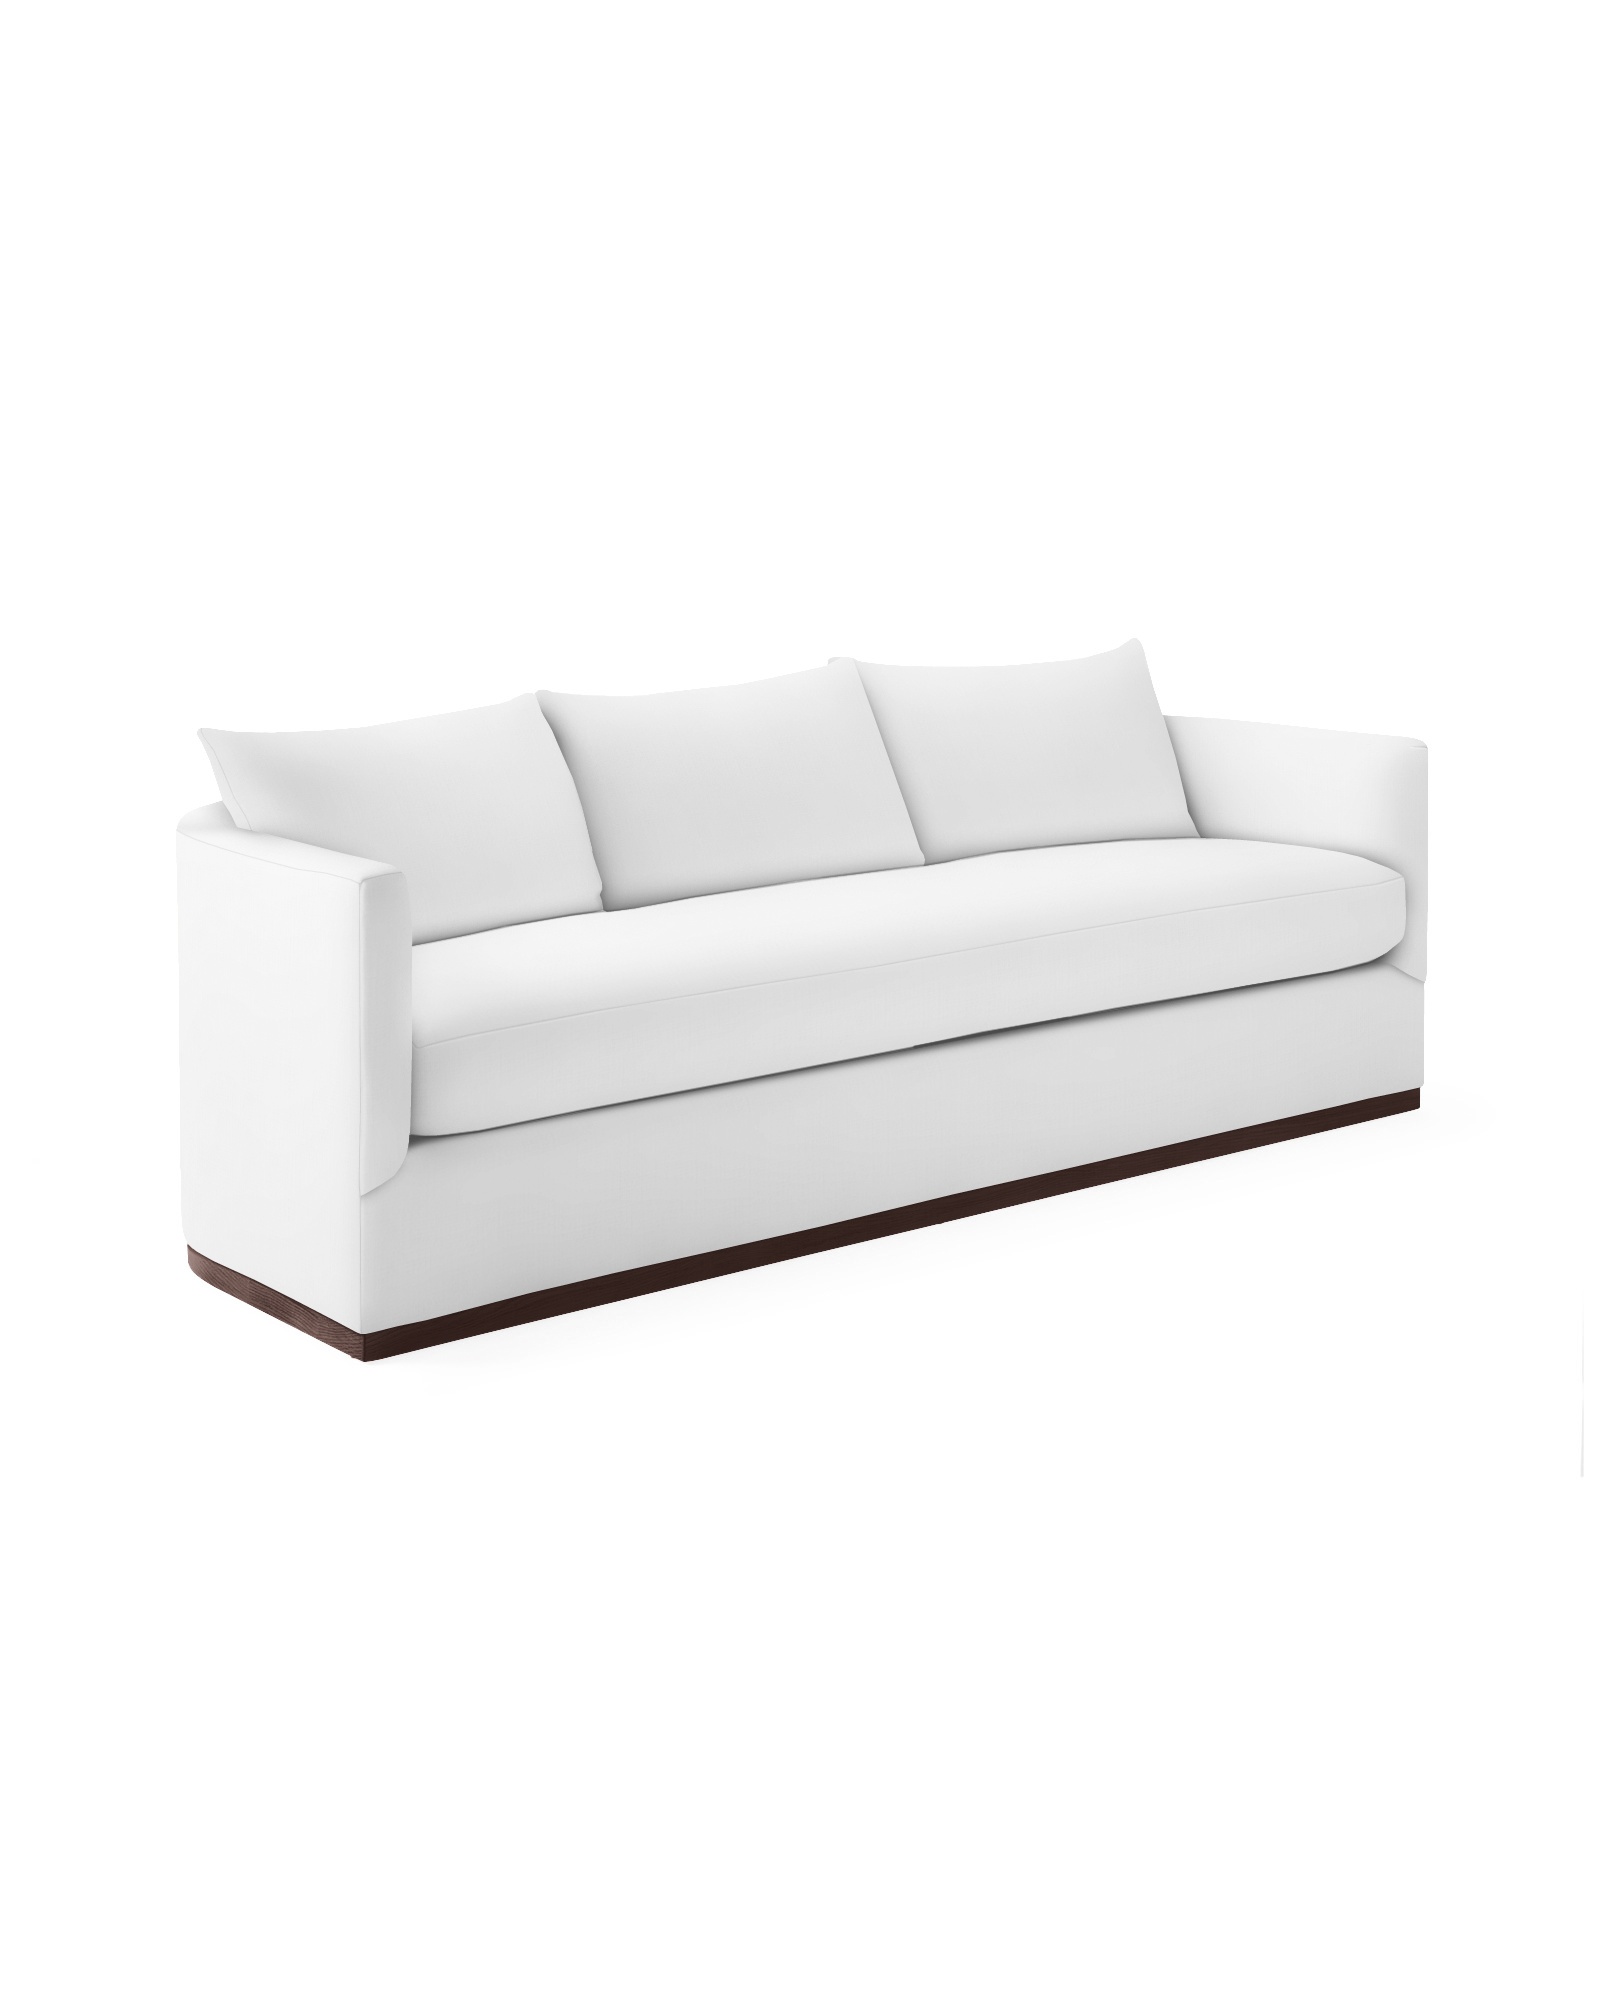 White one seat Parkwood Sofa - Serena & Lily #whitesofas